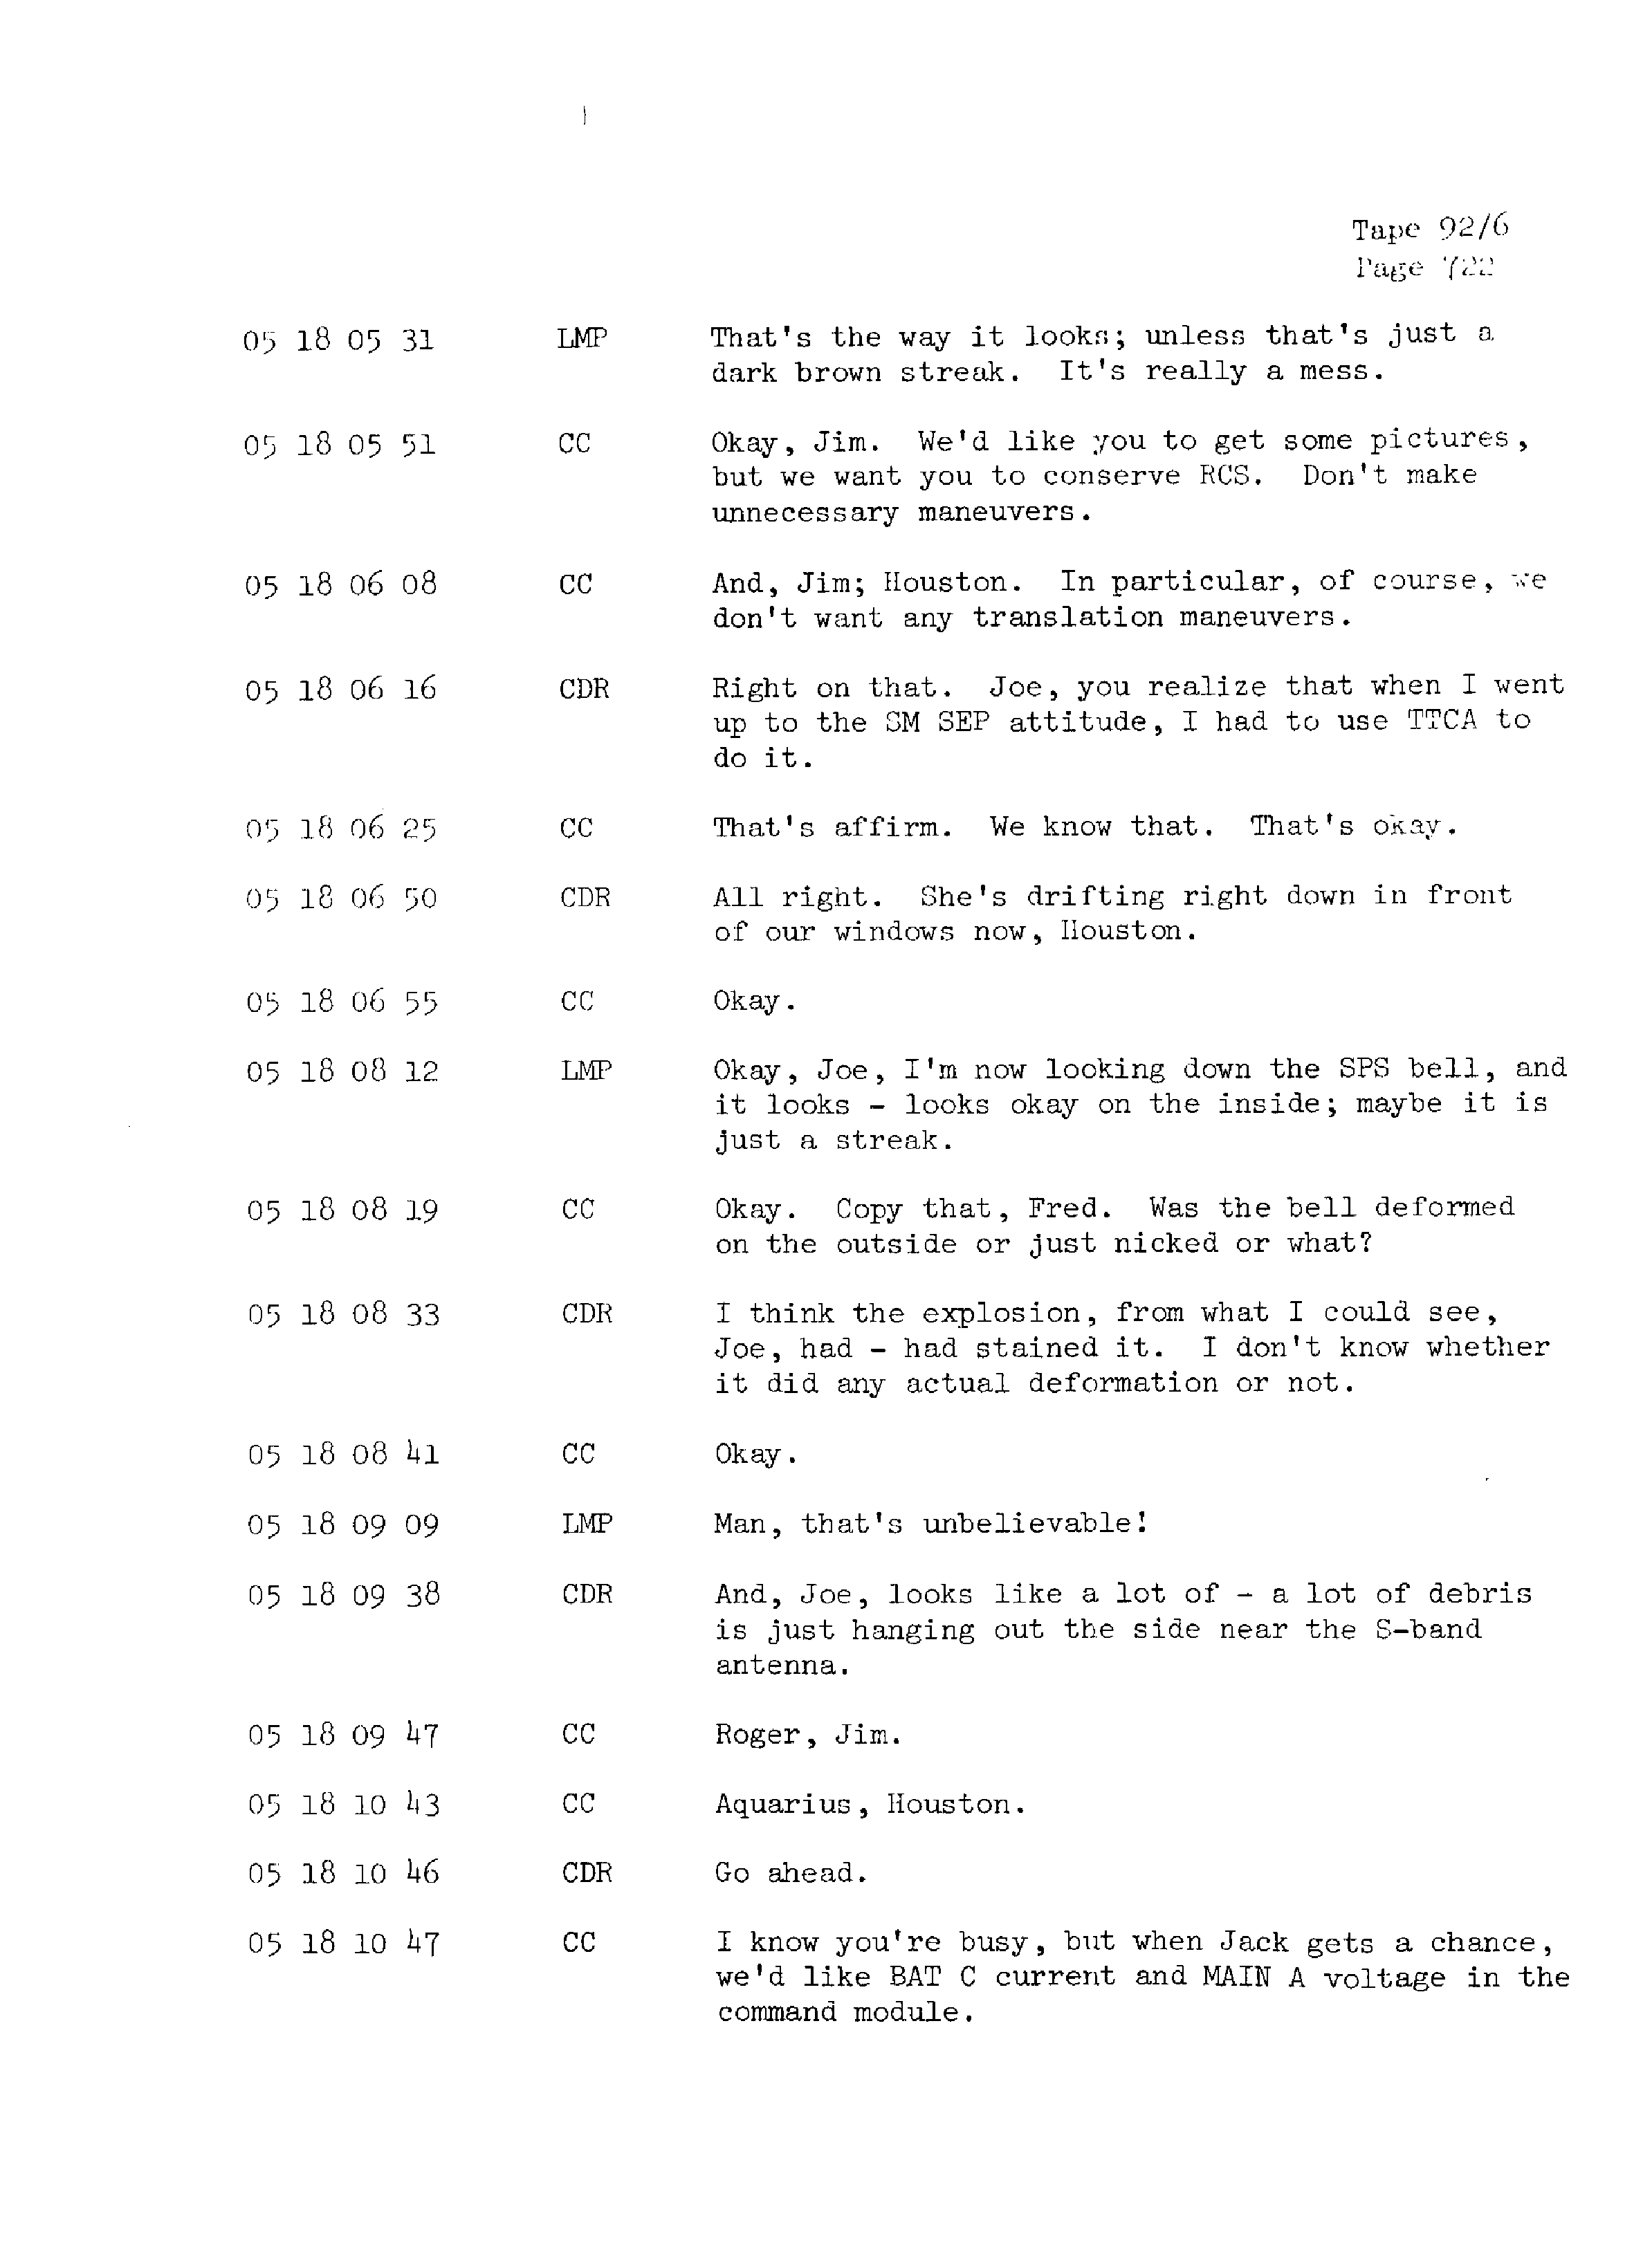 Page 729 of Apollo 13’s original transcript